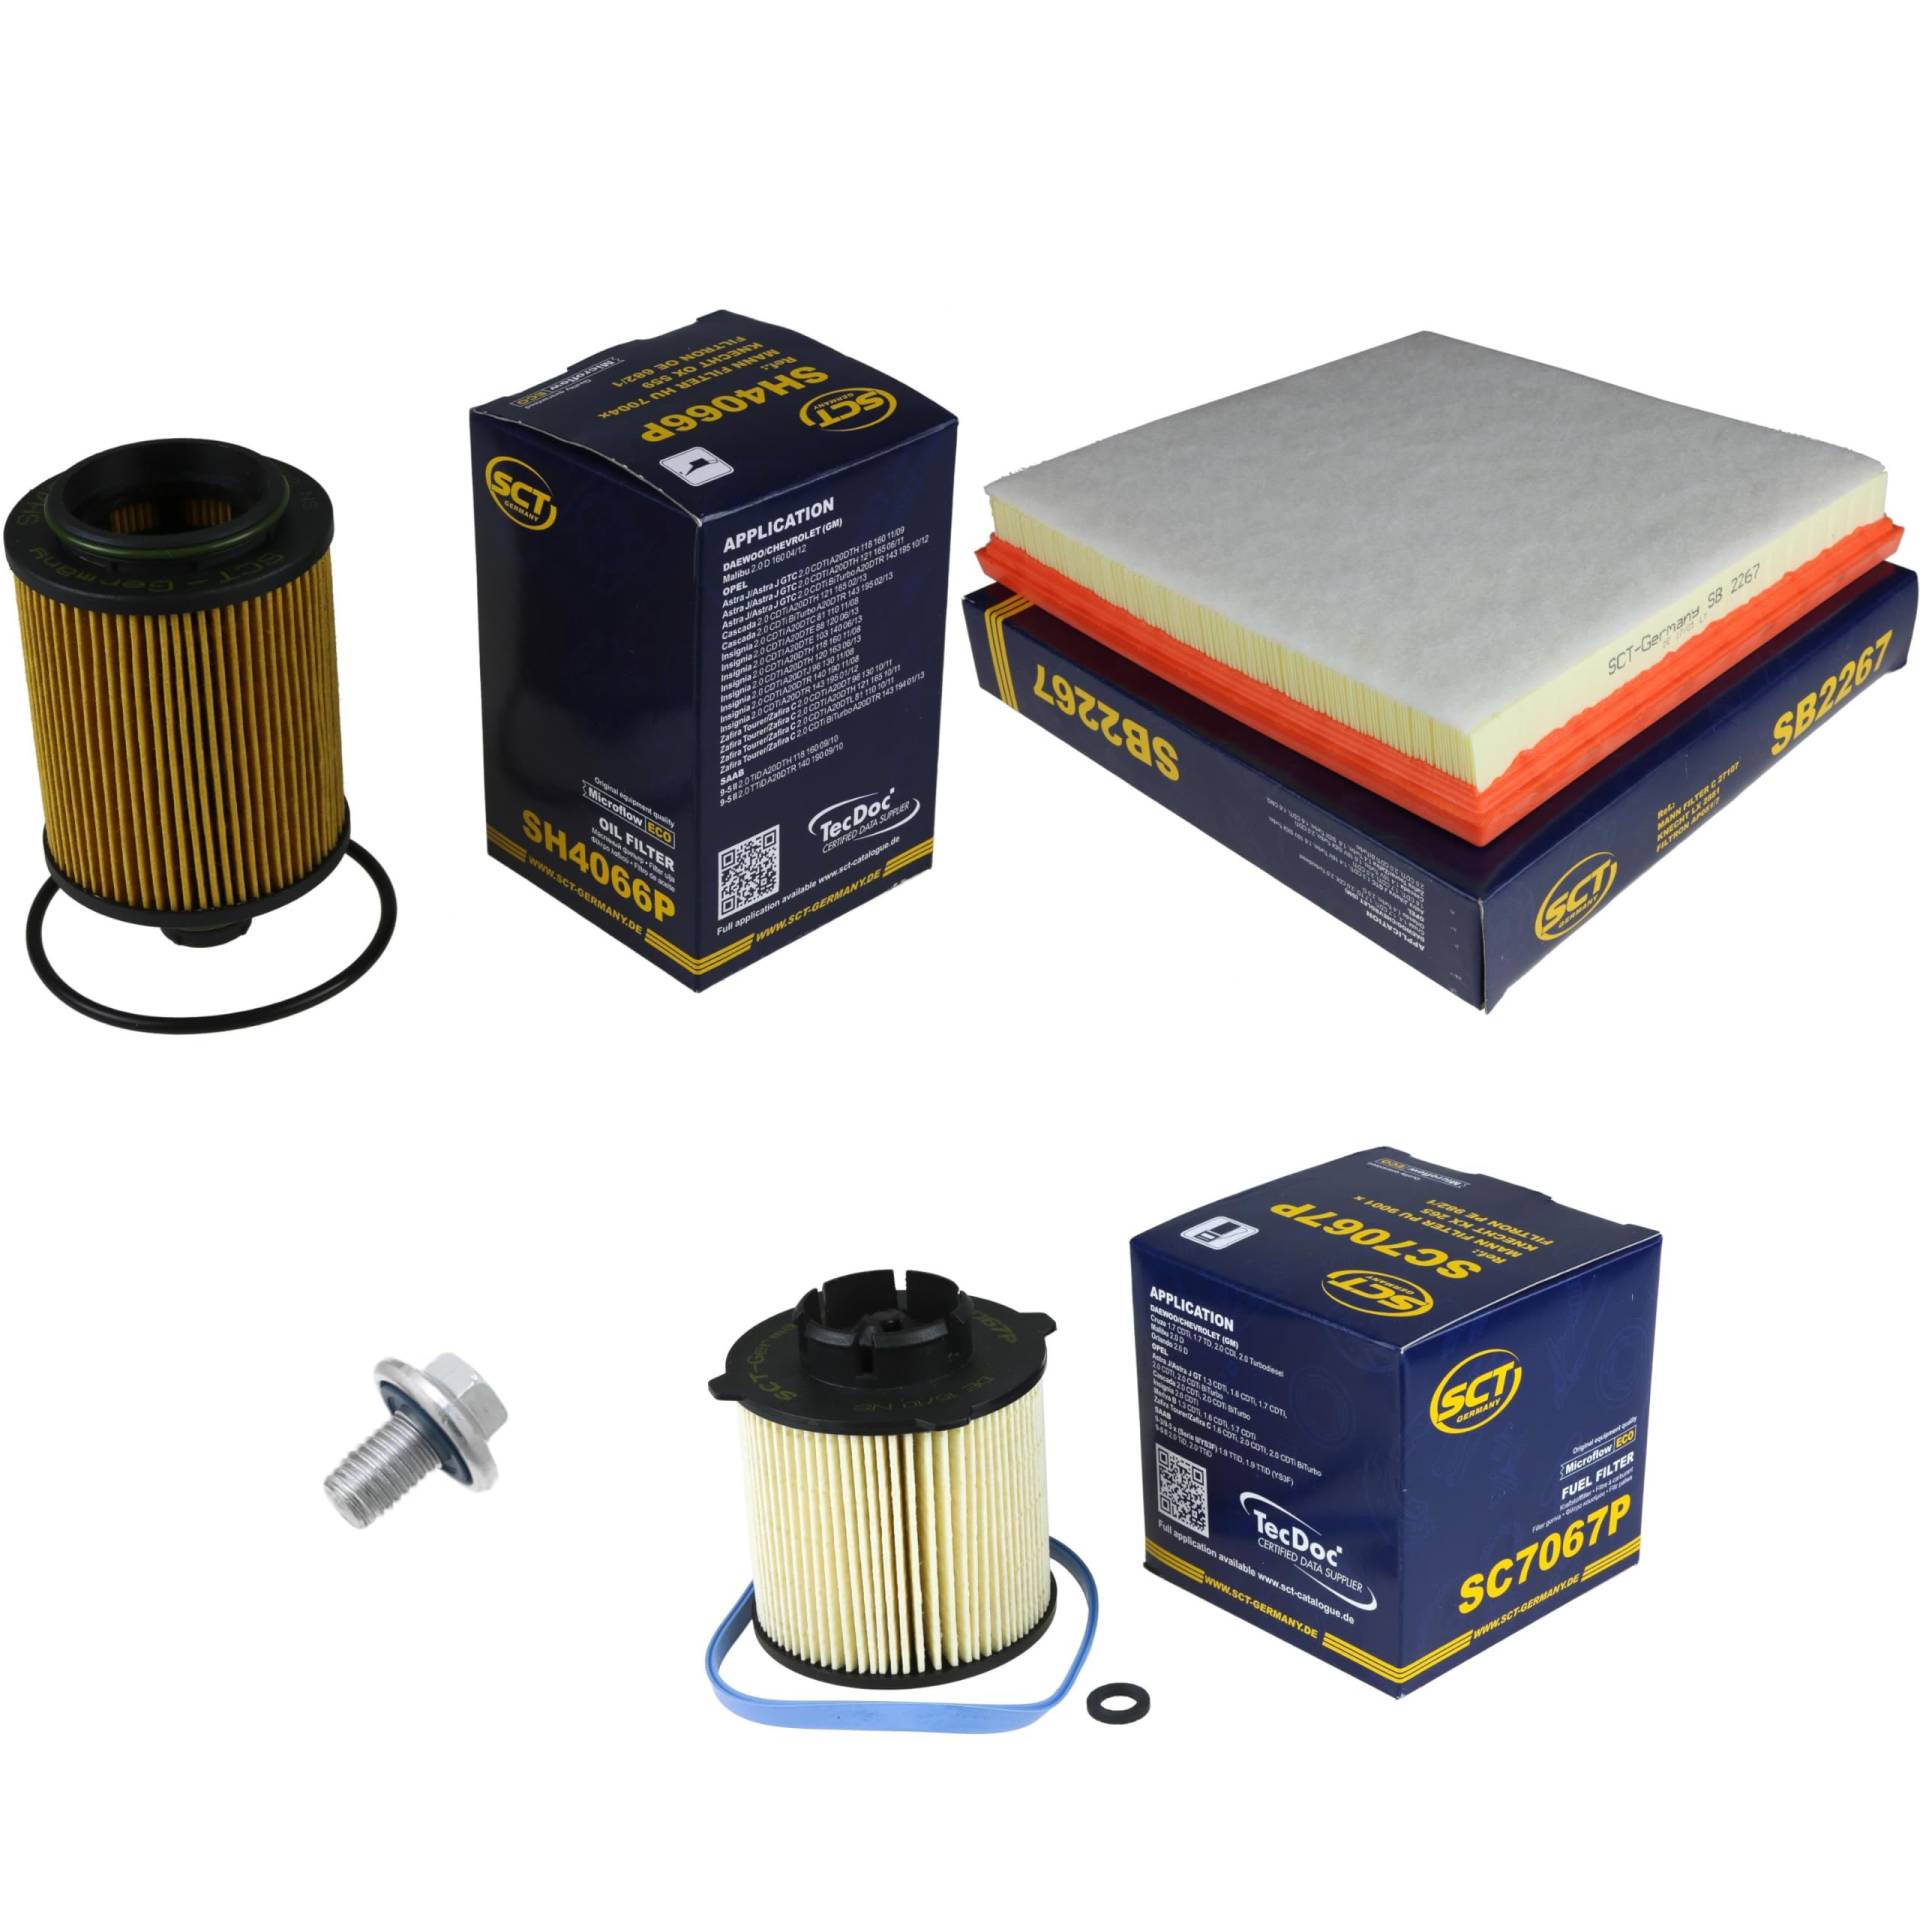 Inspektionspaket Wartungspaket Filterset mit Ölfilter SH 4066 P, Luftfilter SB 2267, Kraftstofffilter SC 7067 P, Verschlussschraube von EISENFELS